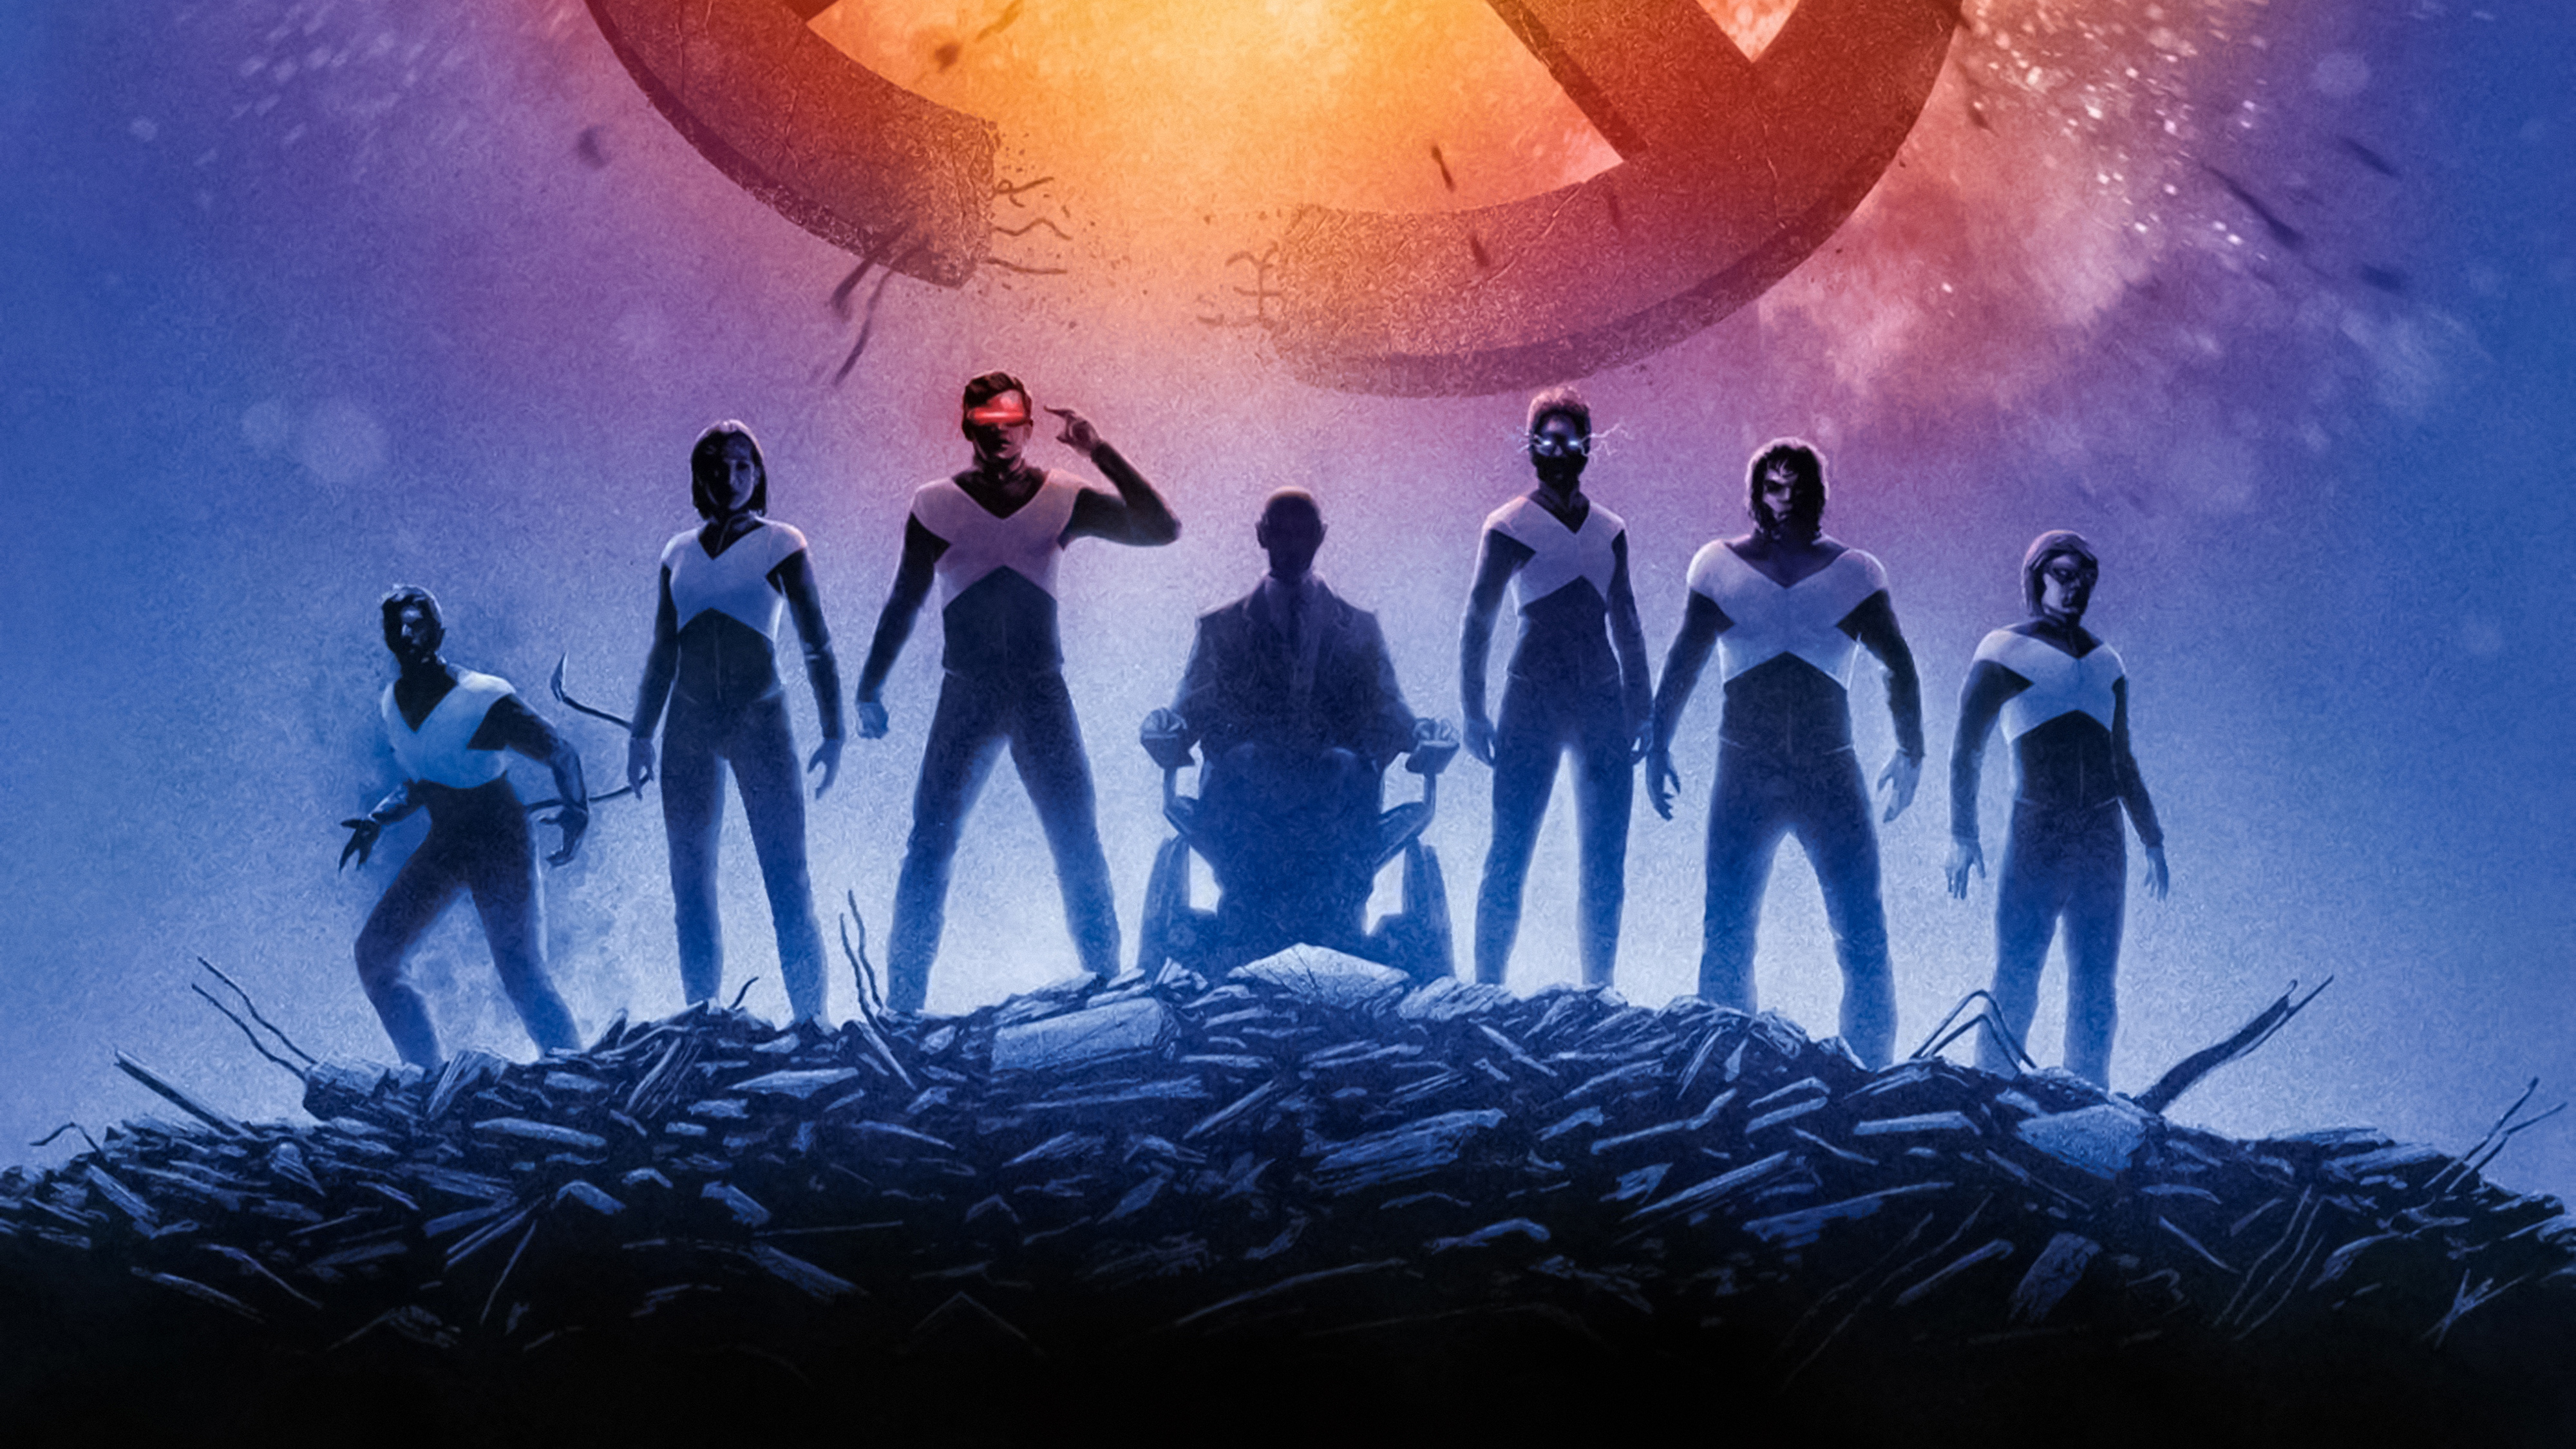 Dark Phoenix 2019 X-Men Textless Poster Wallpapers